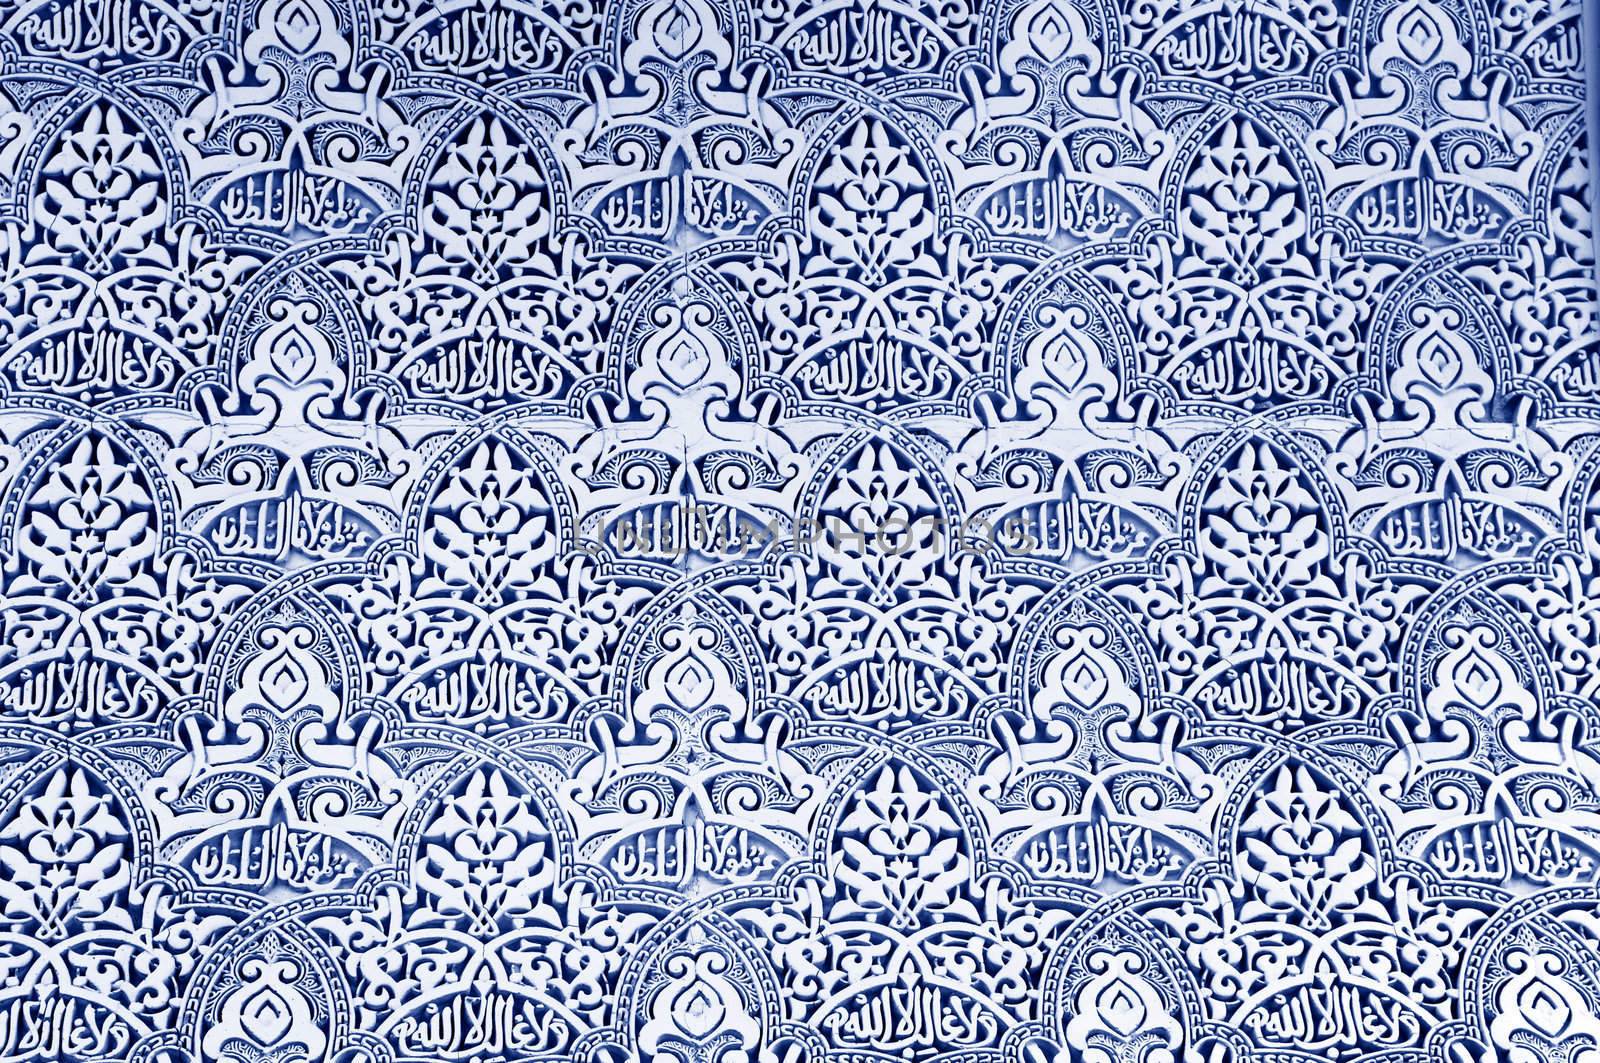 Islamic pattern design  by szefei